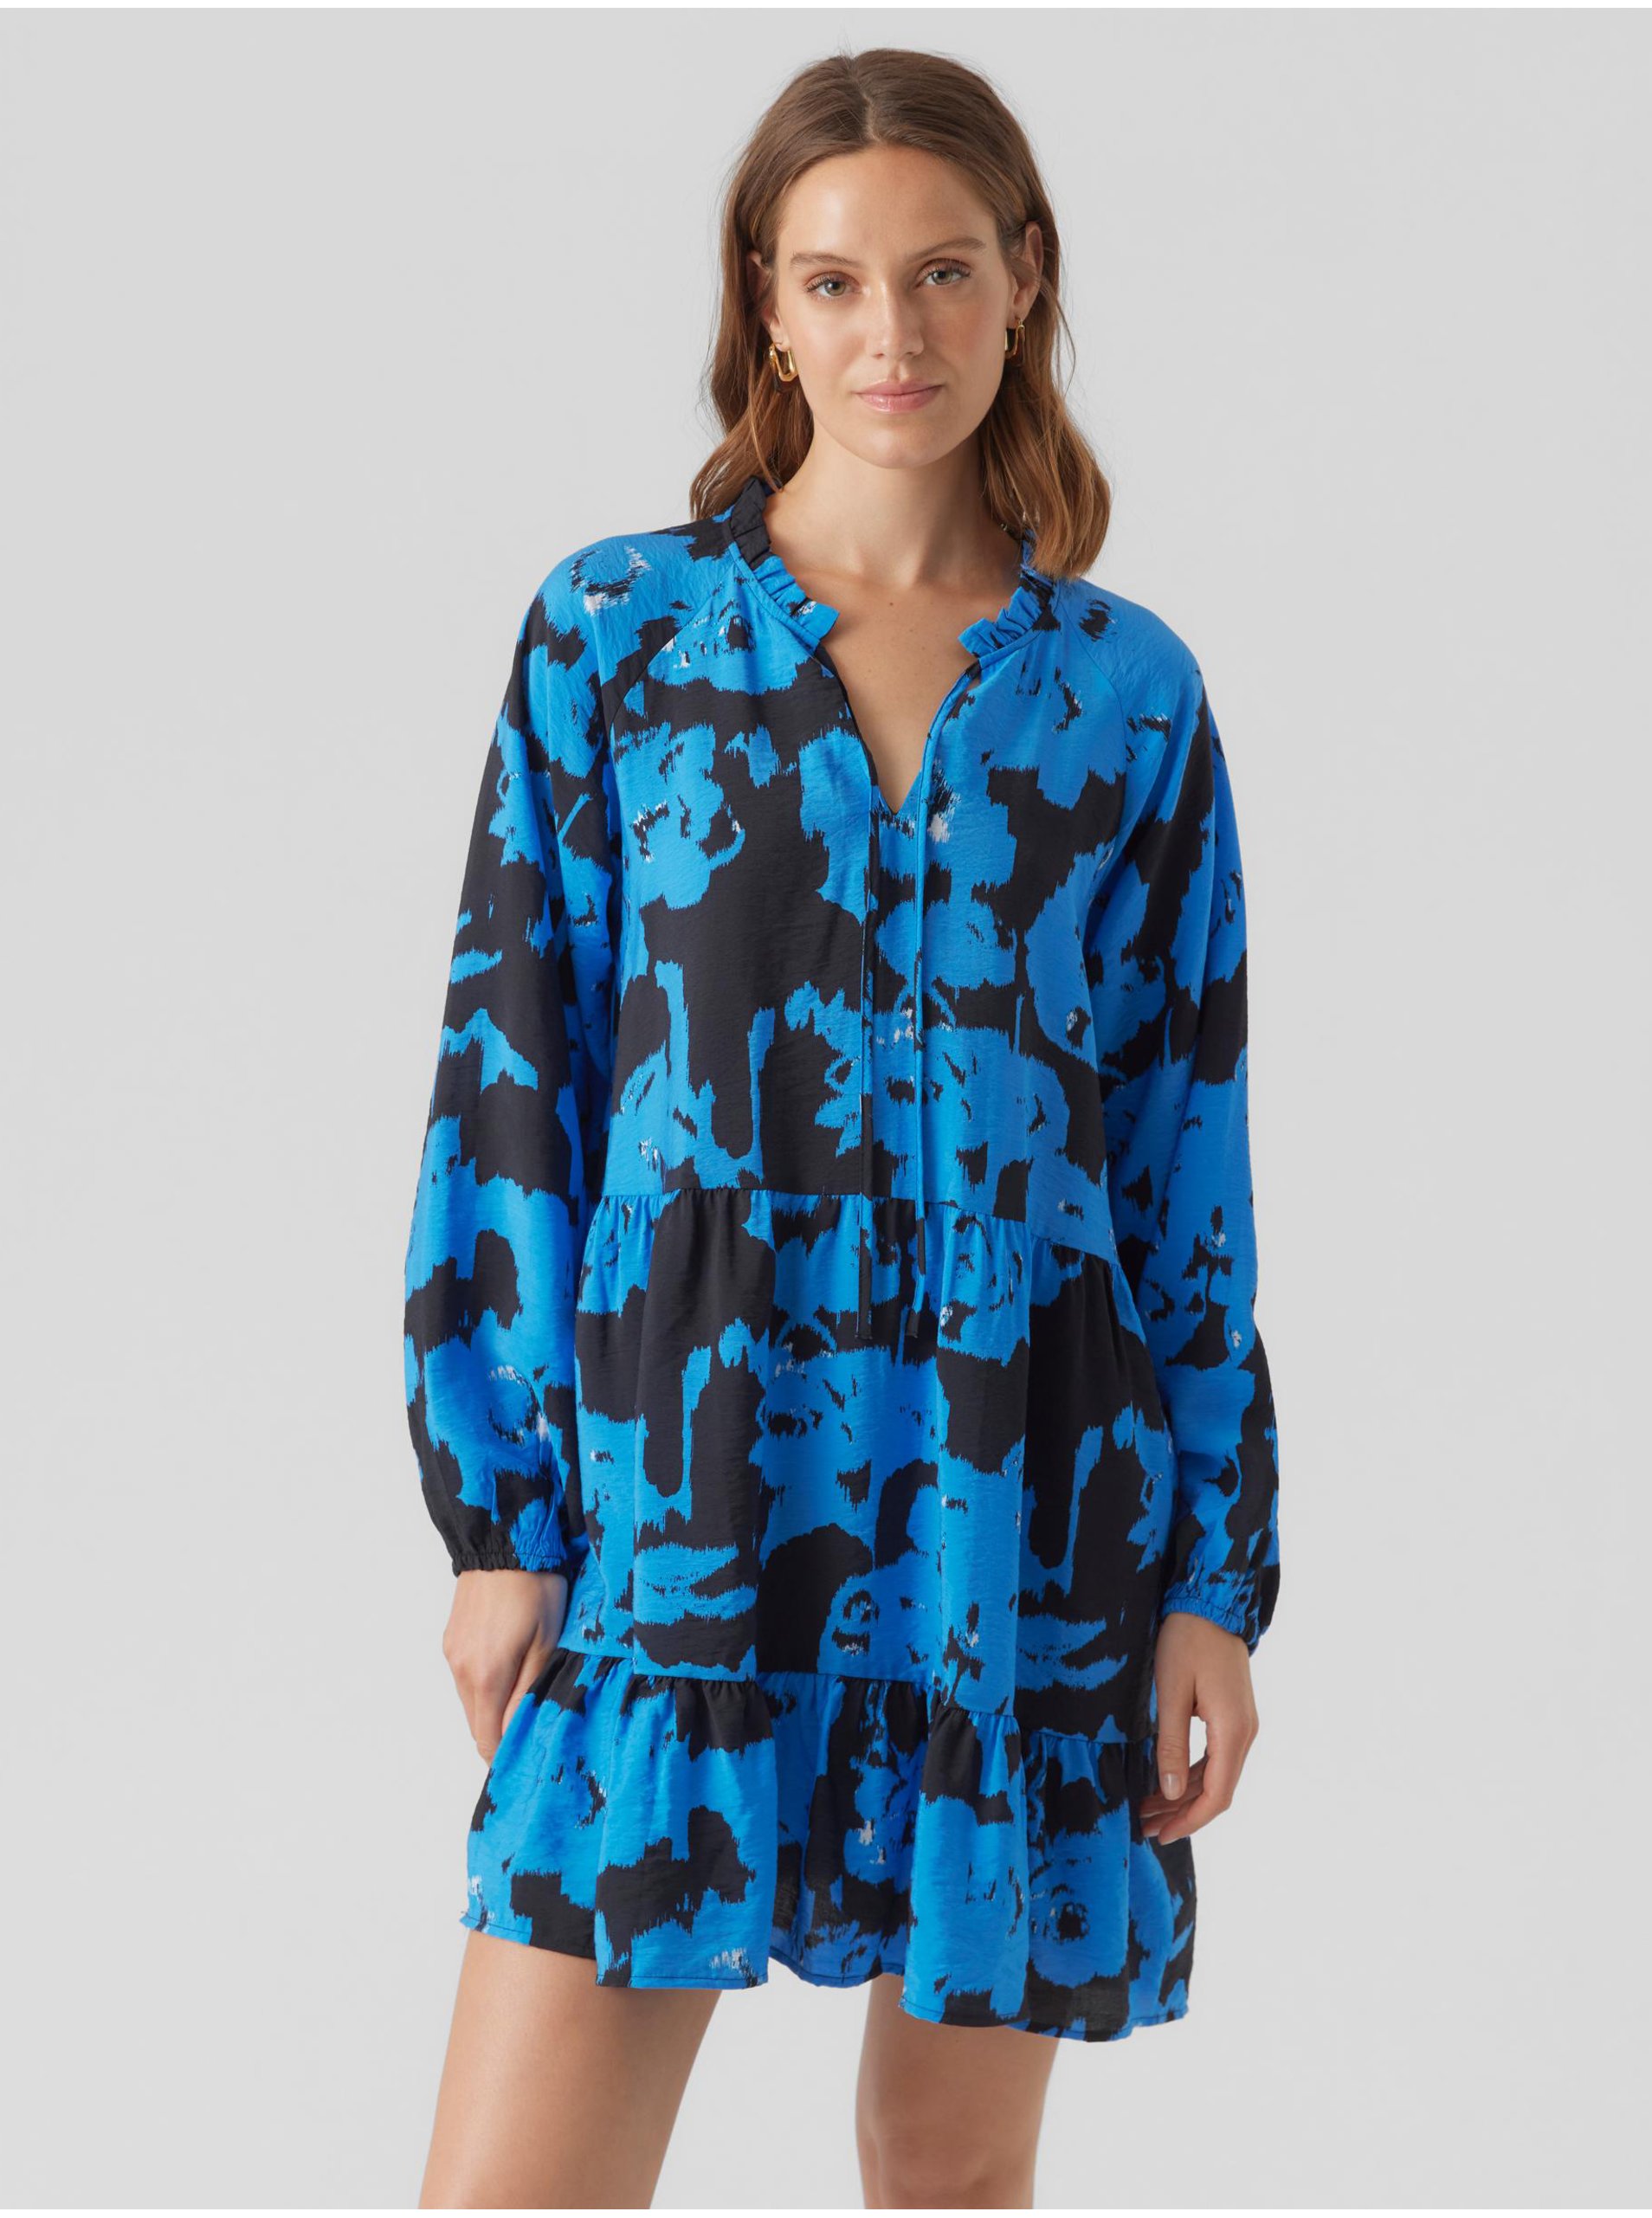 Black and blue women's patterned dress VERO MODA Josie - Women